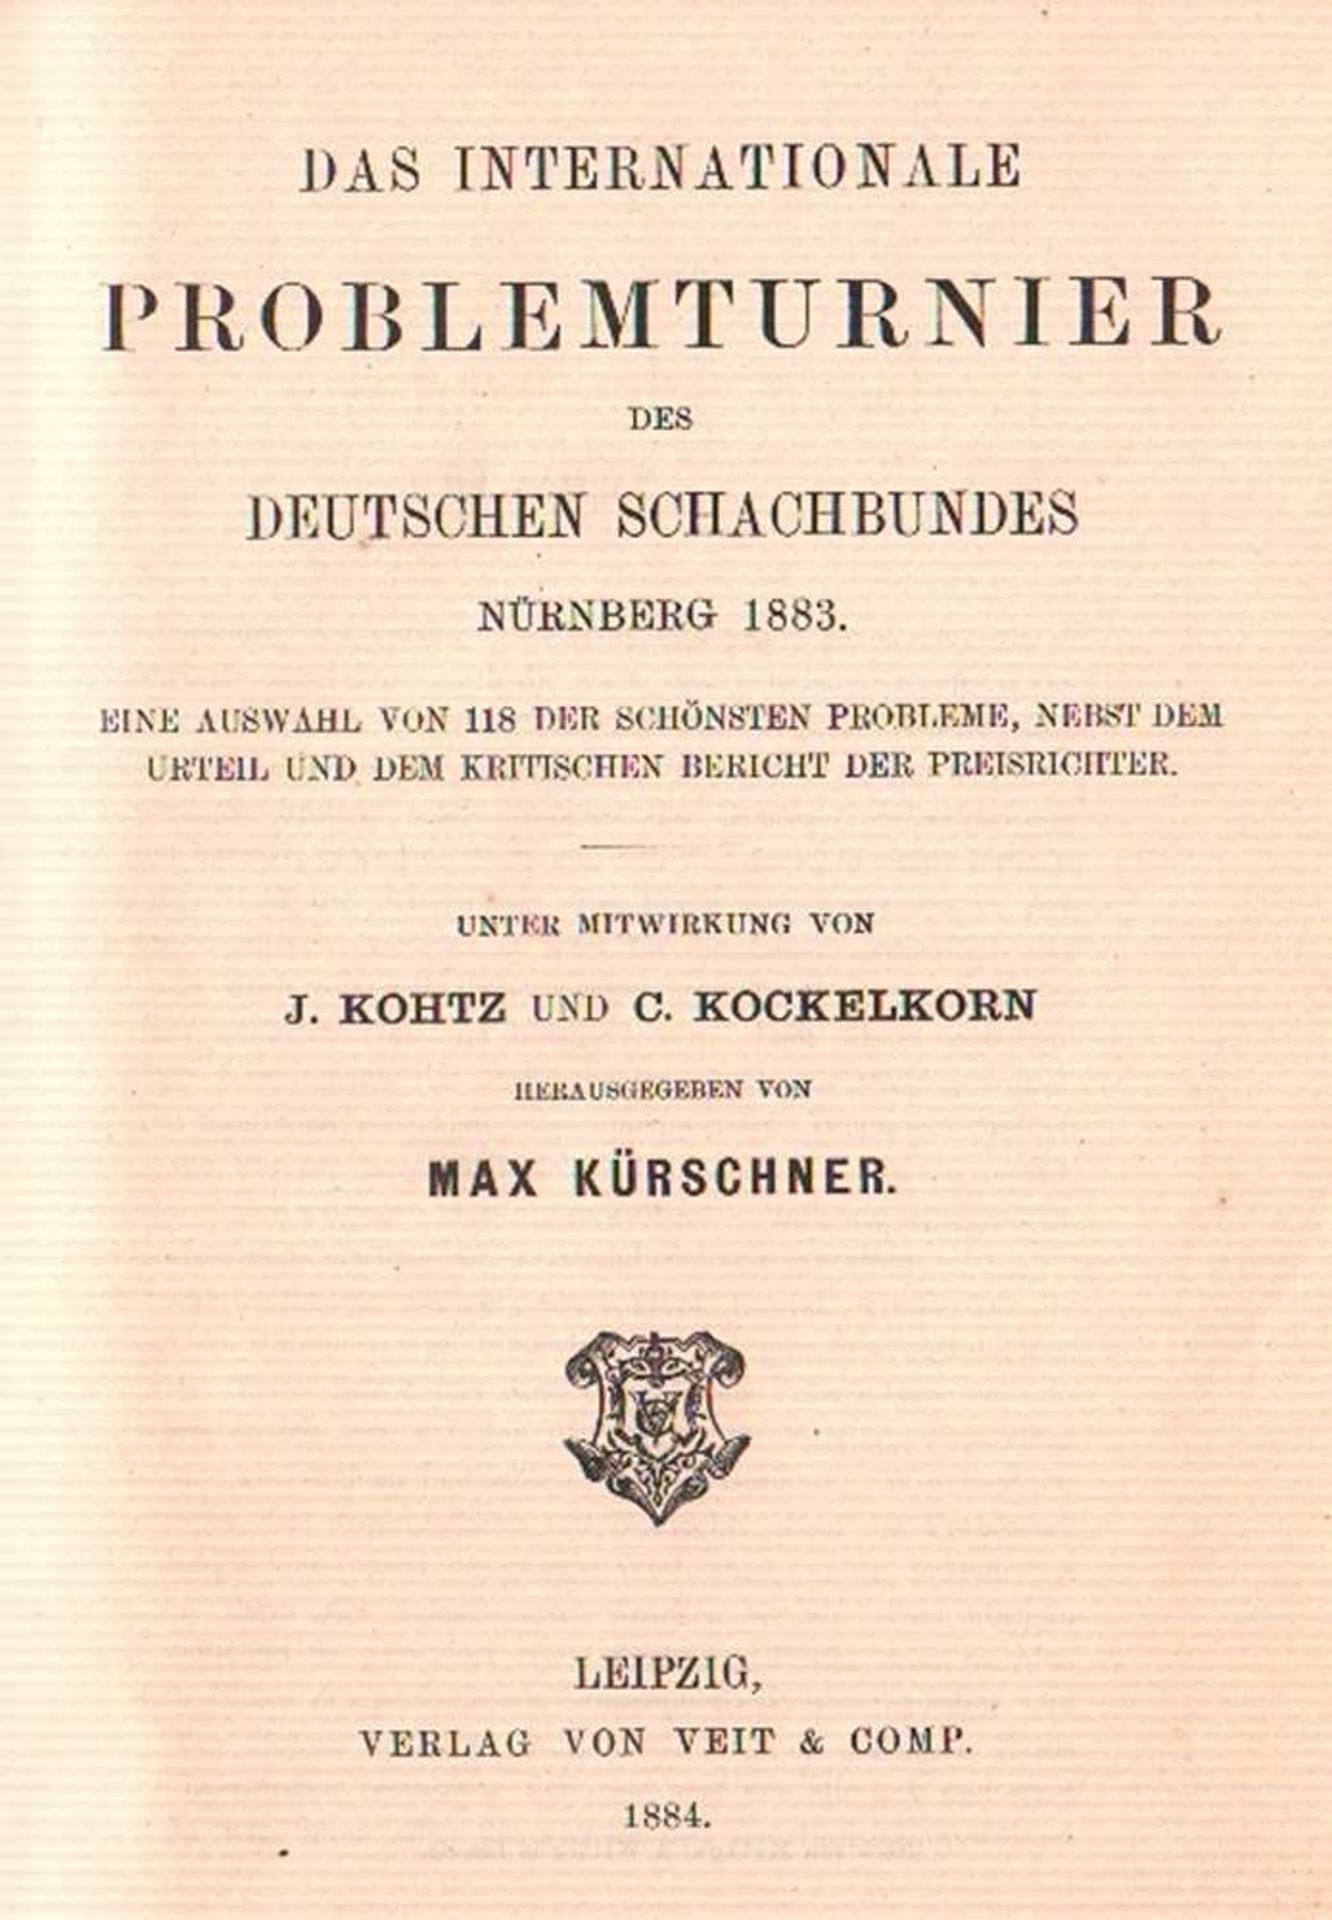 Nürnberg 1883. Kürschner, Max. (Hrsg.) Das internationale Problemturnier des Deutschen